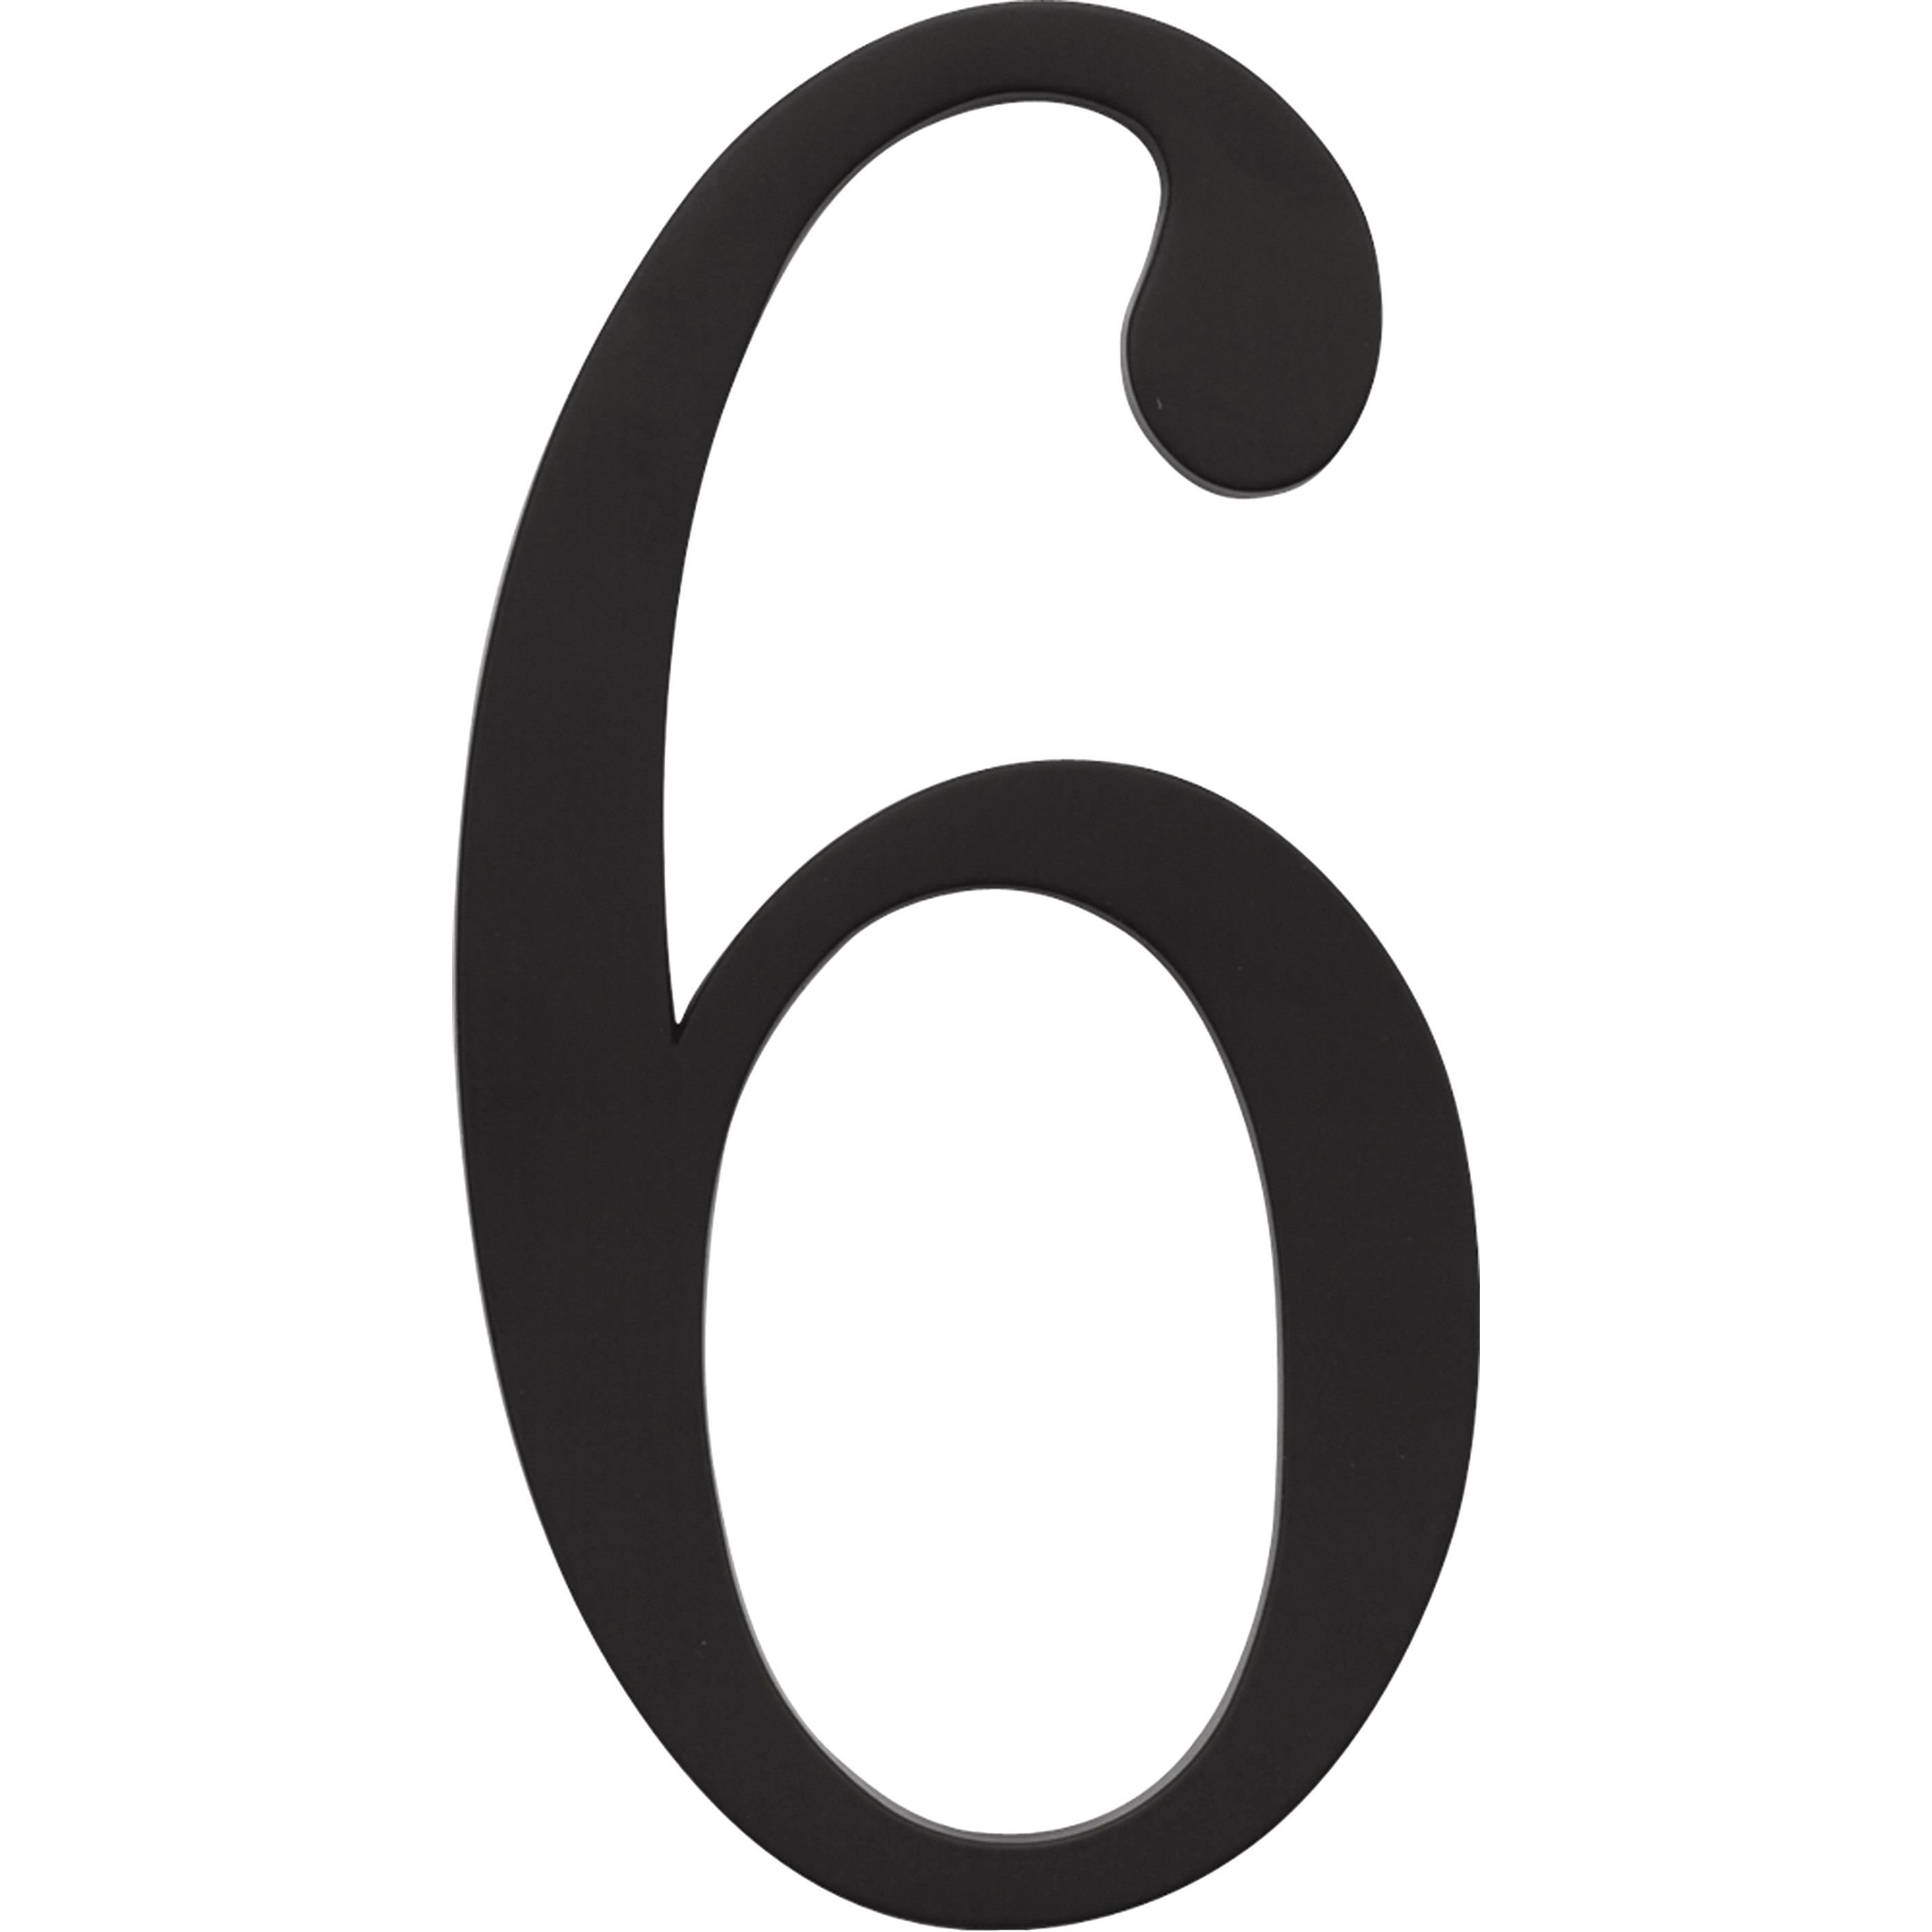 6 без. Цифра 6. Цифра 6 черная. Цифра 6 на белом фоне. Цифра 6 на прозрачном фоне.